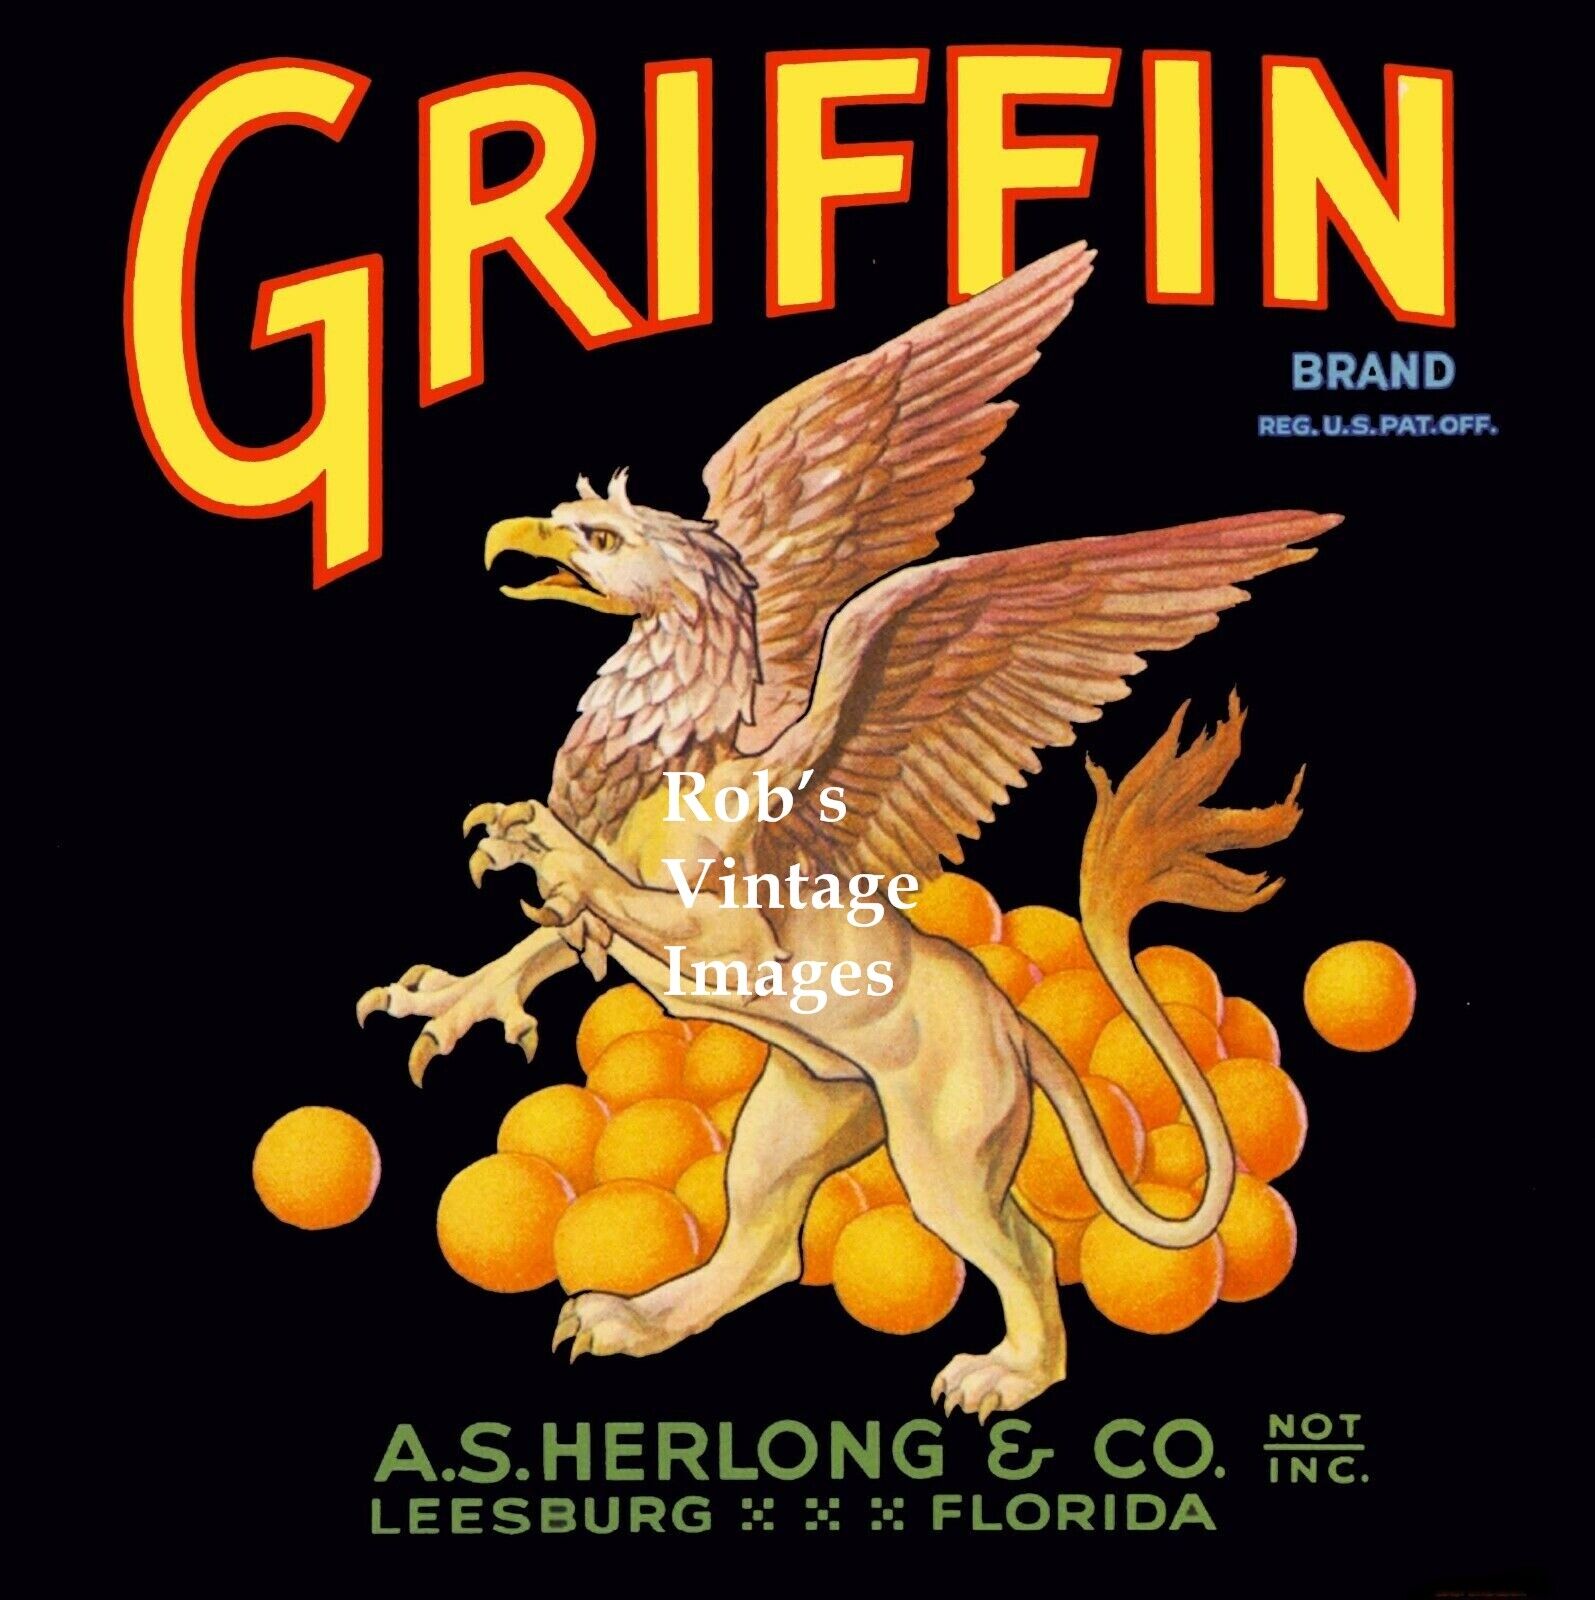  Leesburg Florida Griffin Brand Orange Citrus Fruit Crate Label Art Print